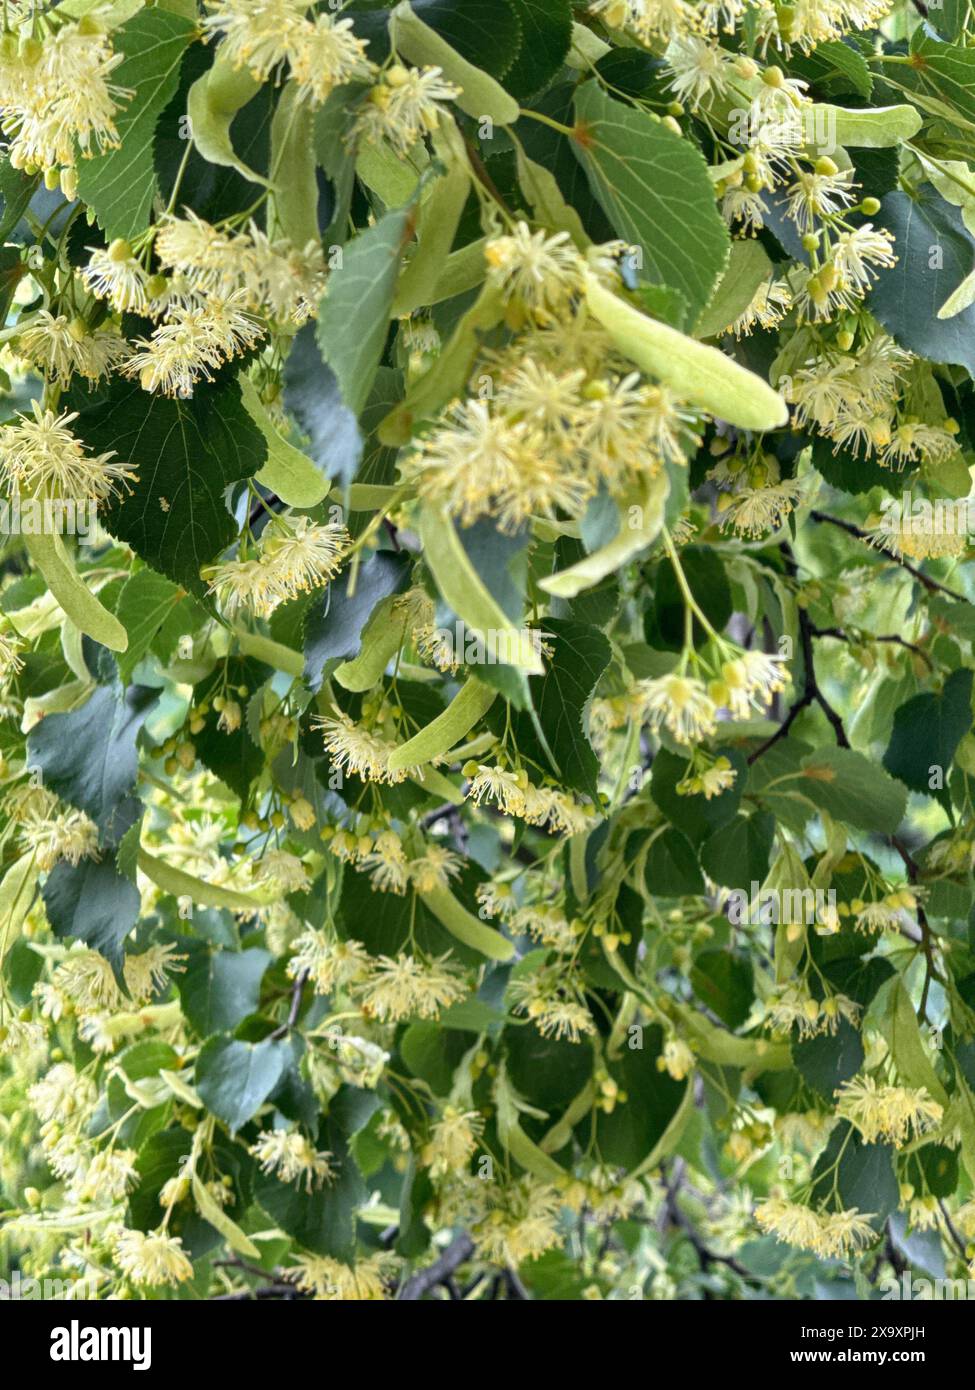 Linden Tree Blossom Close-up : feuilles vertes vibrantes et grappes de fleurs jaunes dans la nature Banque D'Images